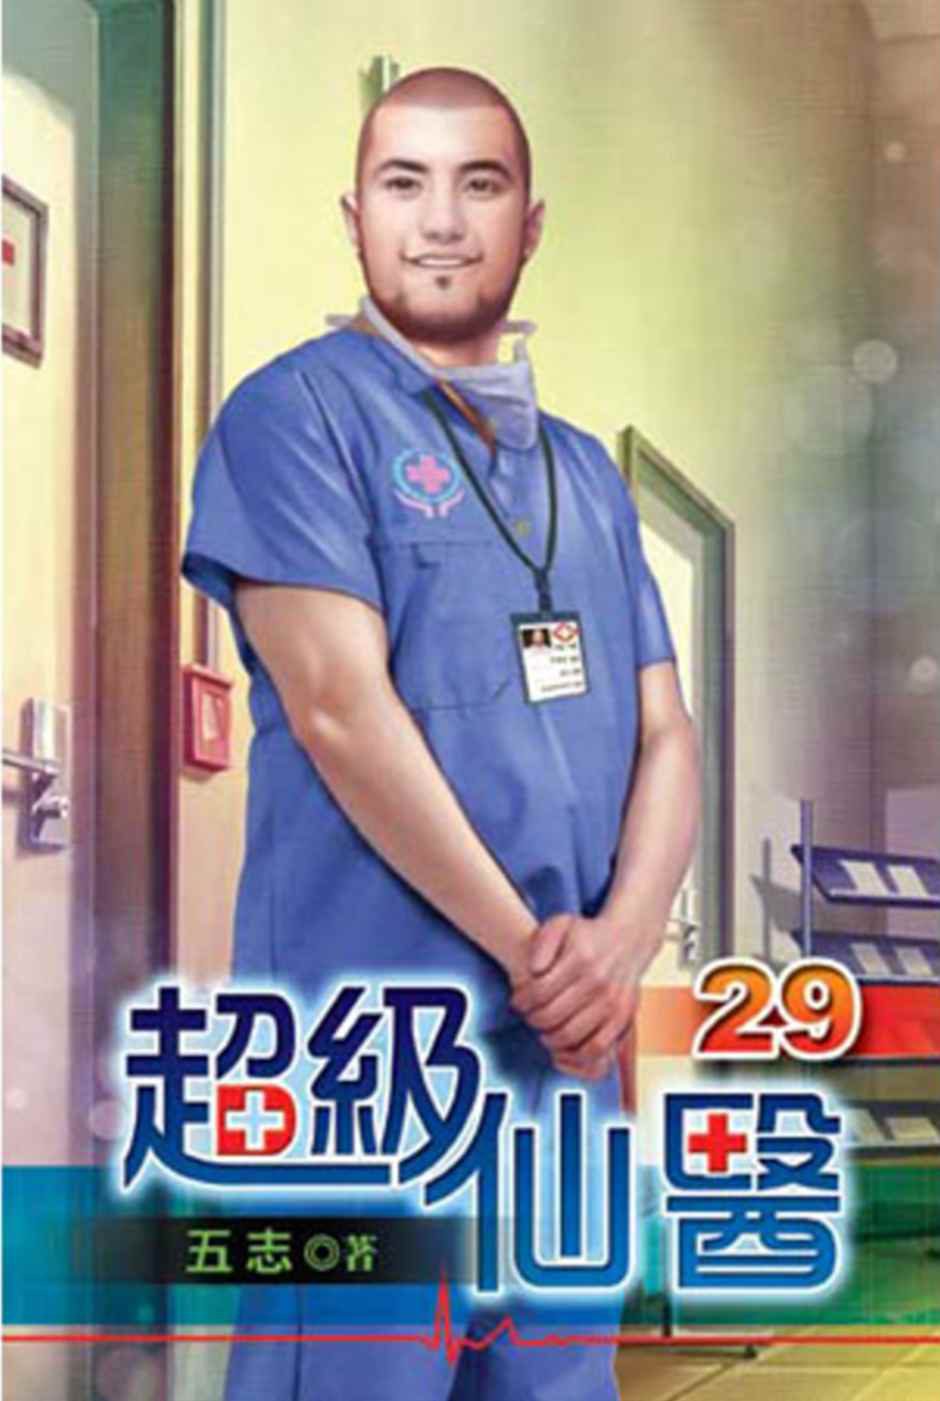 超級仙醫29